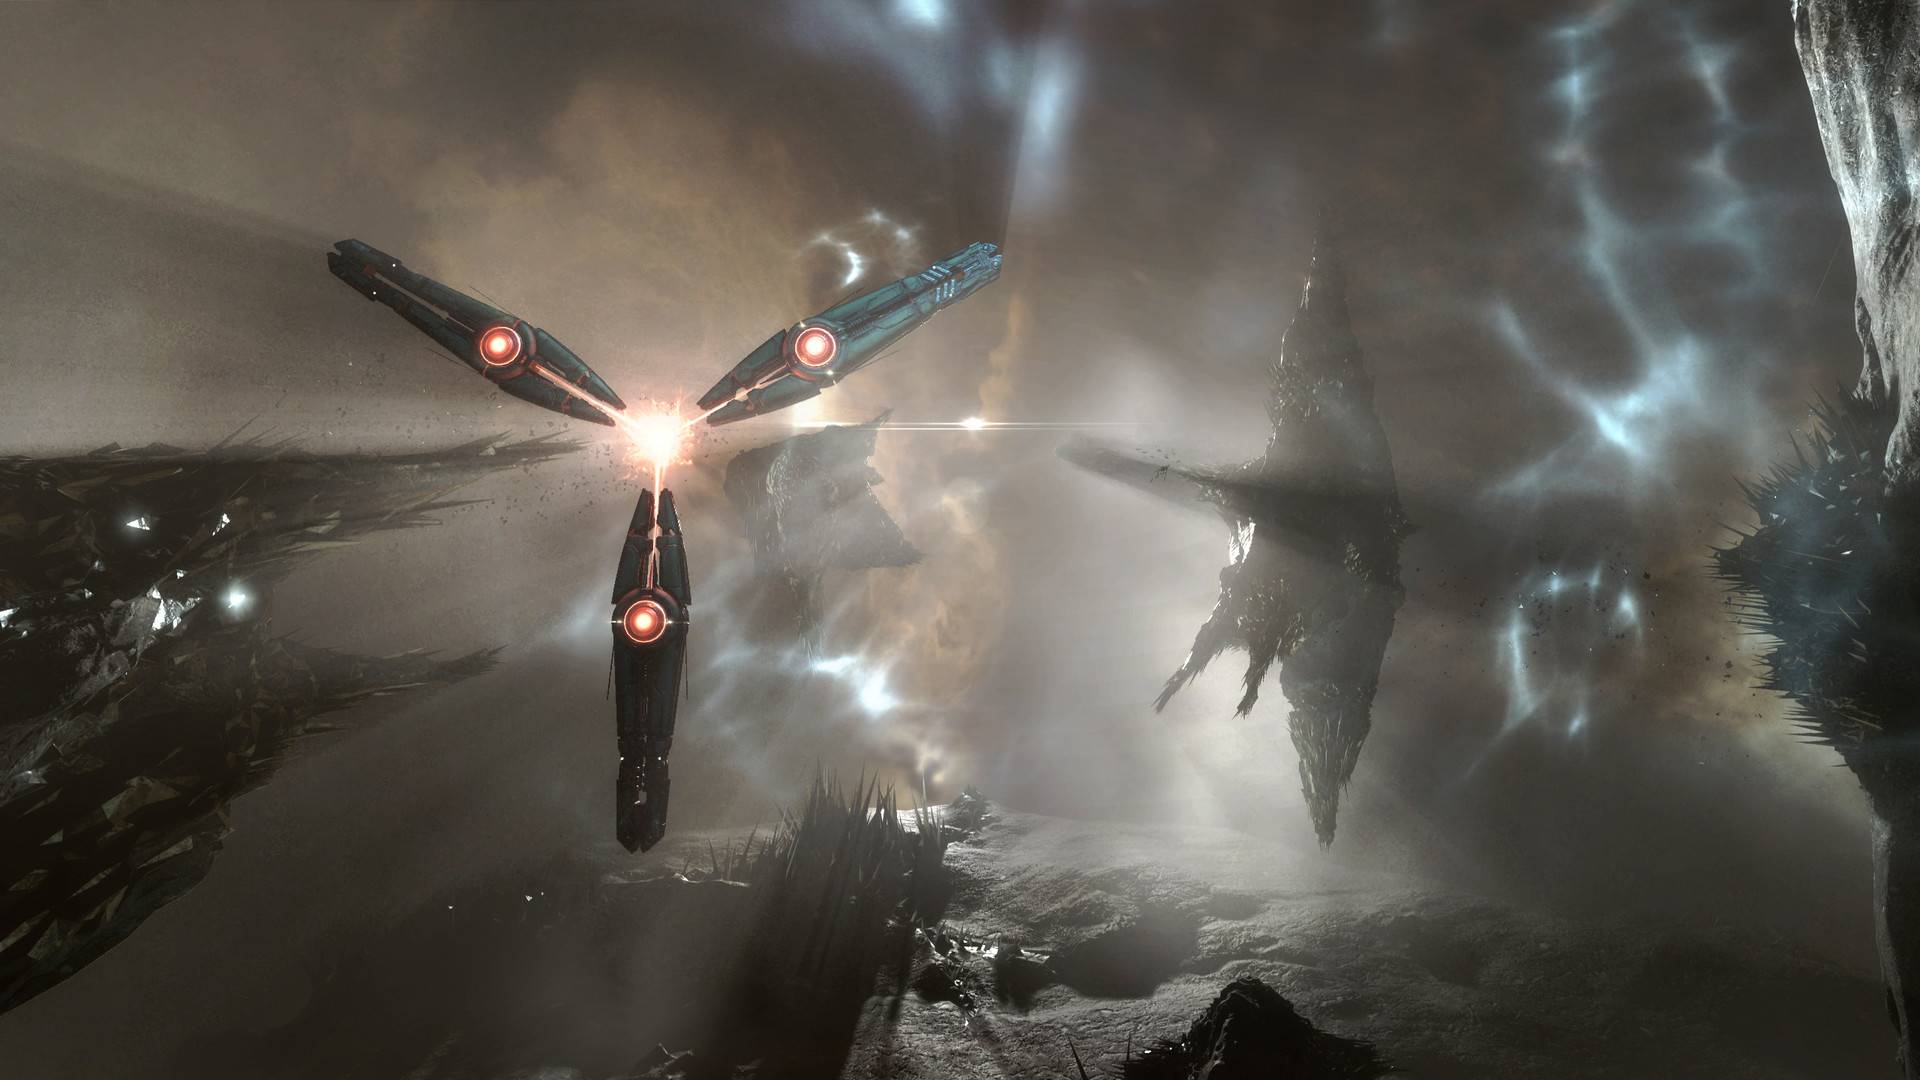 Καλύτερα παιχνίδια MMORPG: Eve Online. Η εικόνα δείχνει ότι τα αλλοδαπή πλοία που πετούν μέσα στο διάστημα